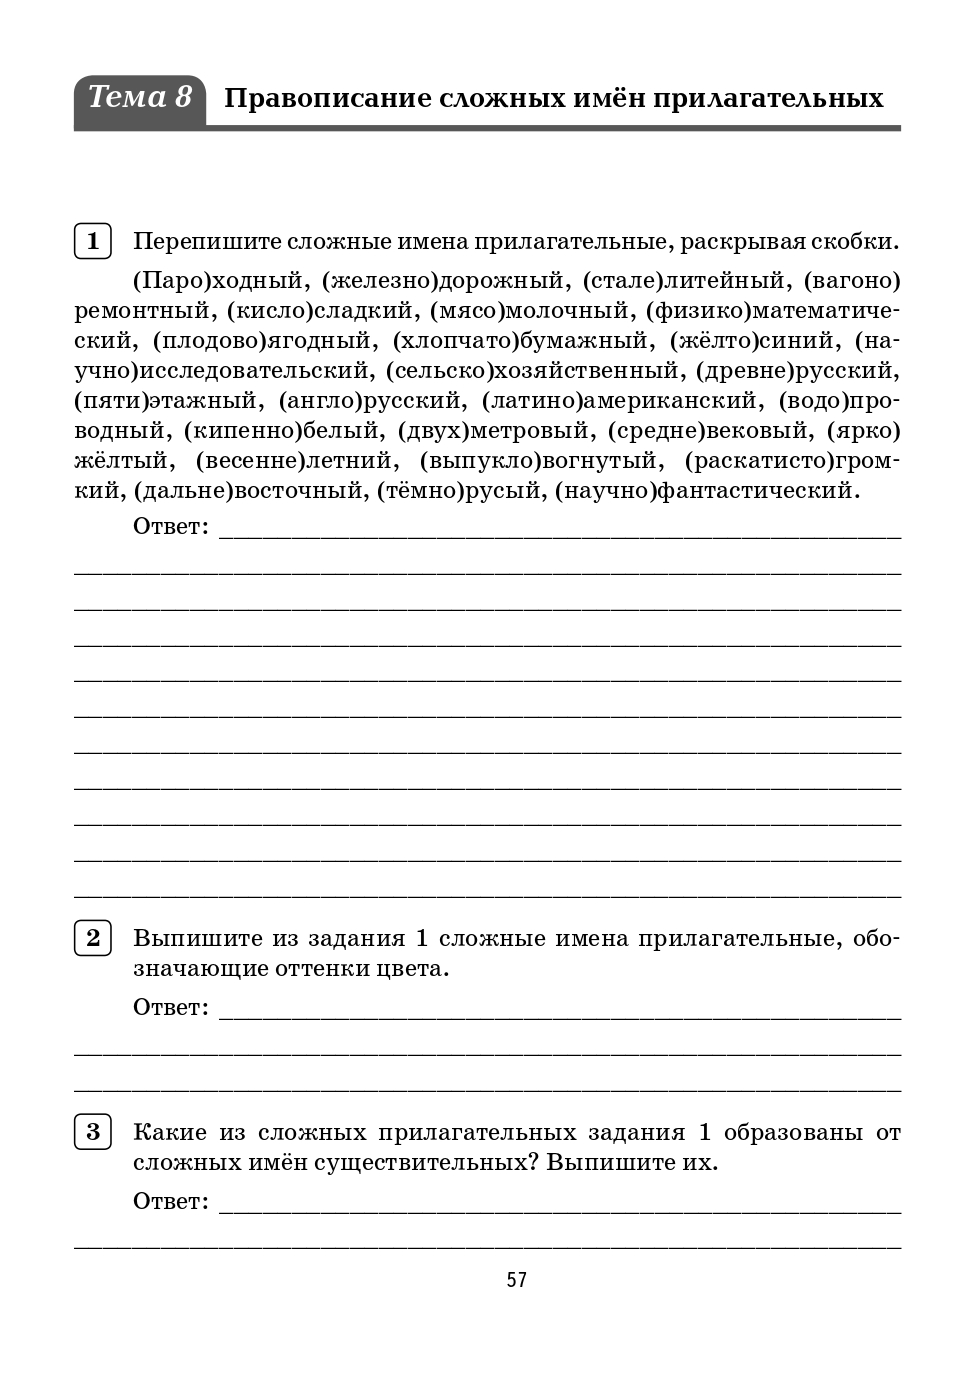 Русский язык. 6 класс. Орфографический тренинг.